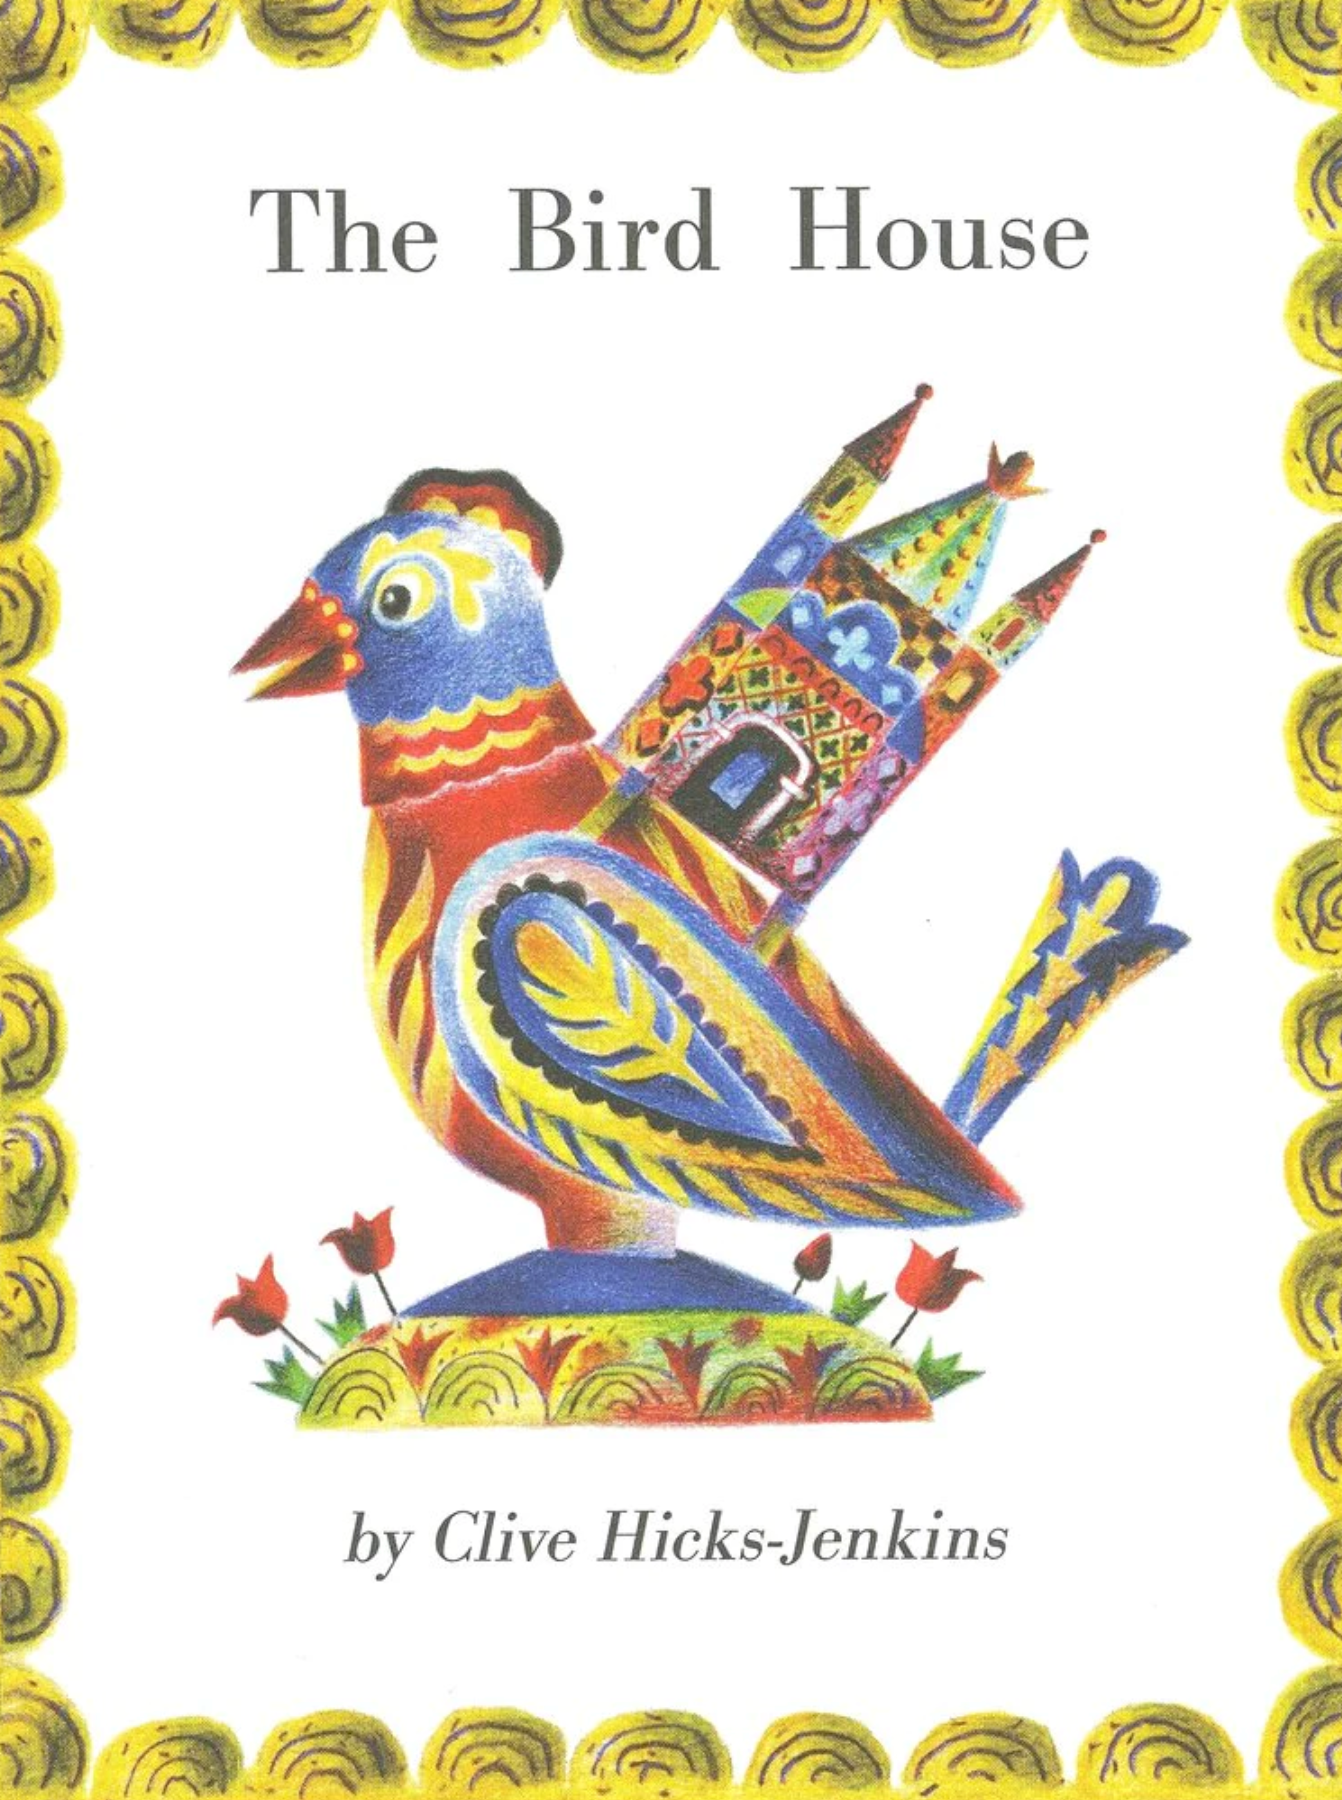 THE BIRD HOUSE